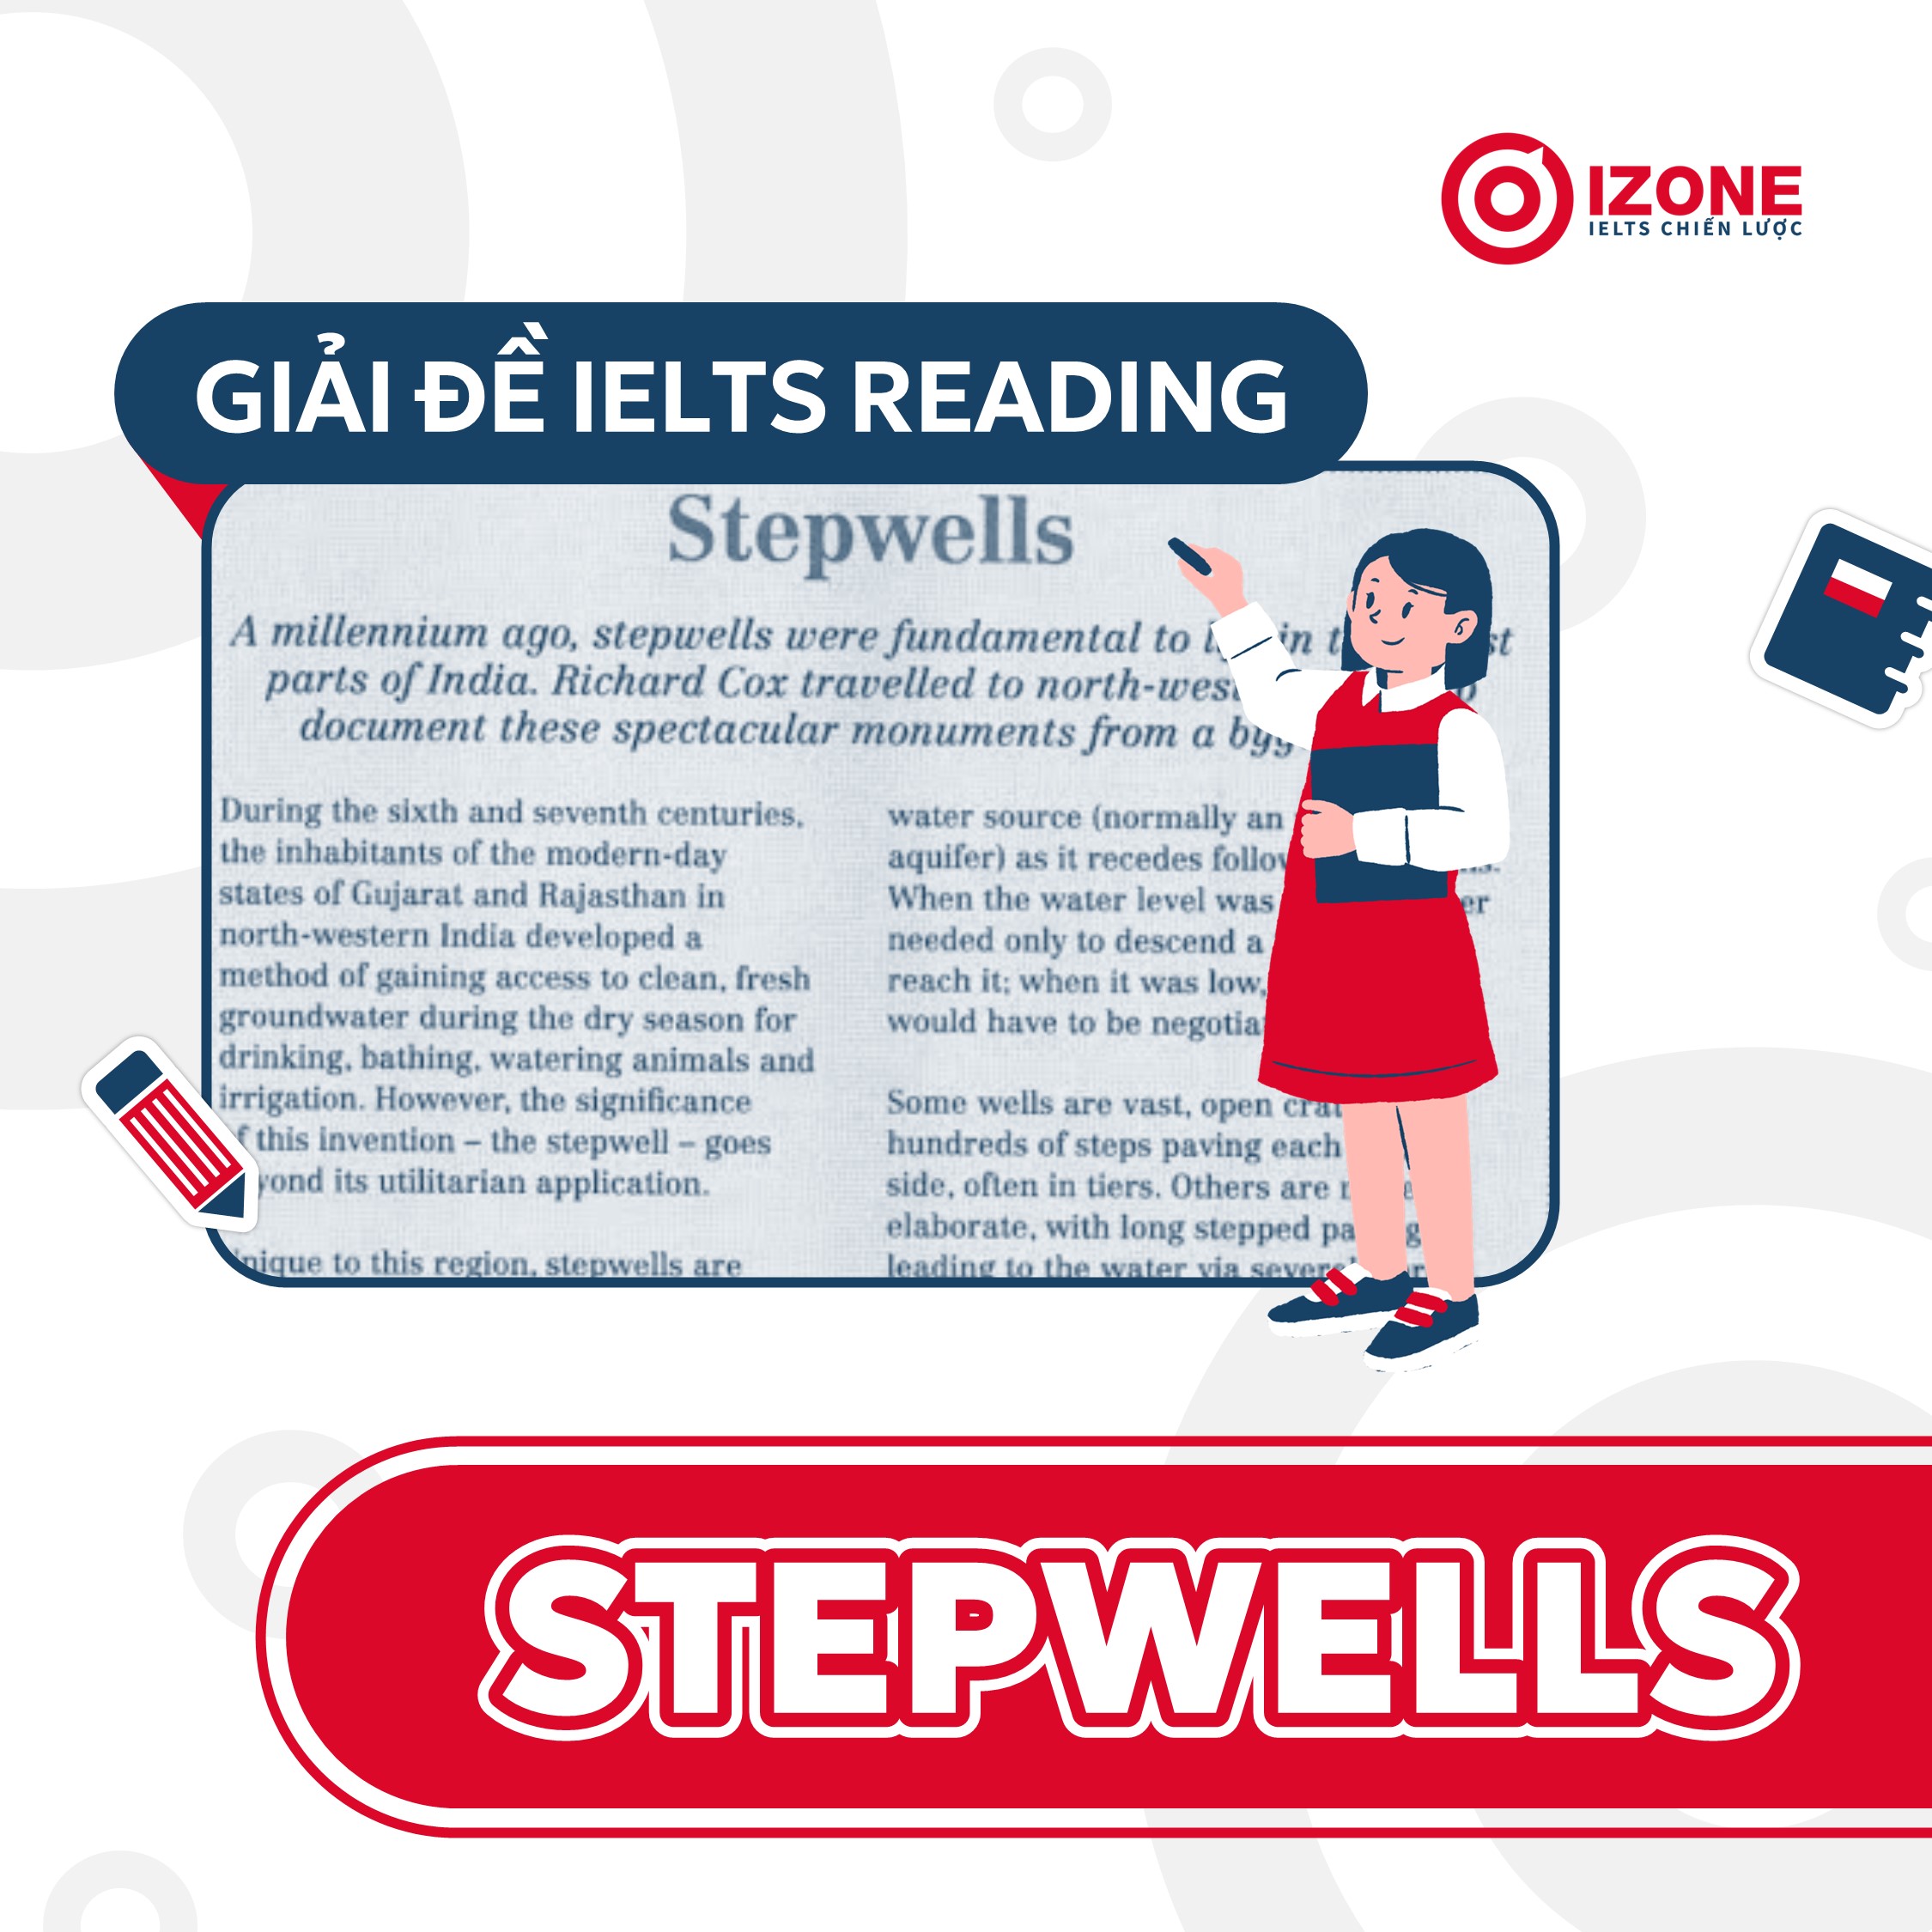 Stepwells IELTS Reading – Giải đề chi tiết